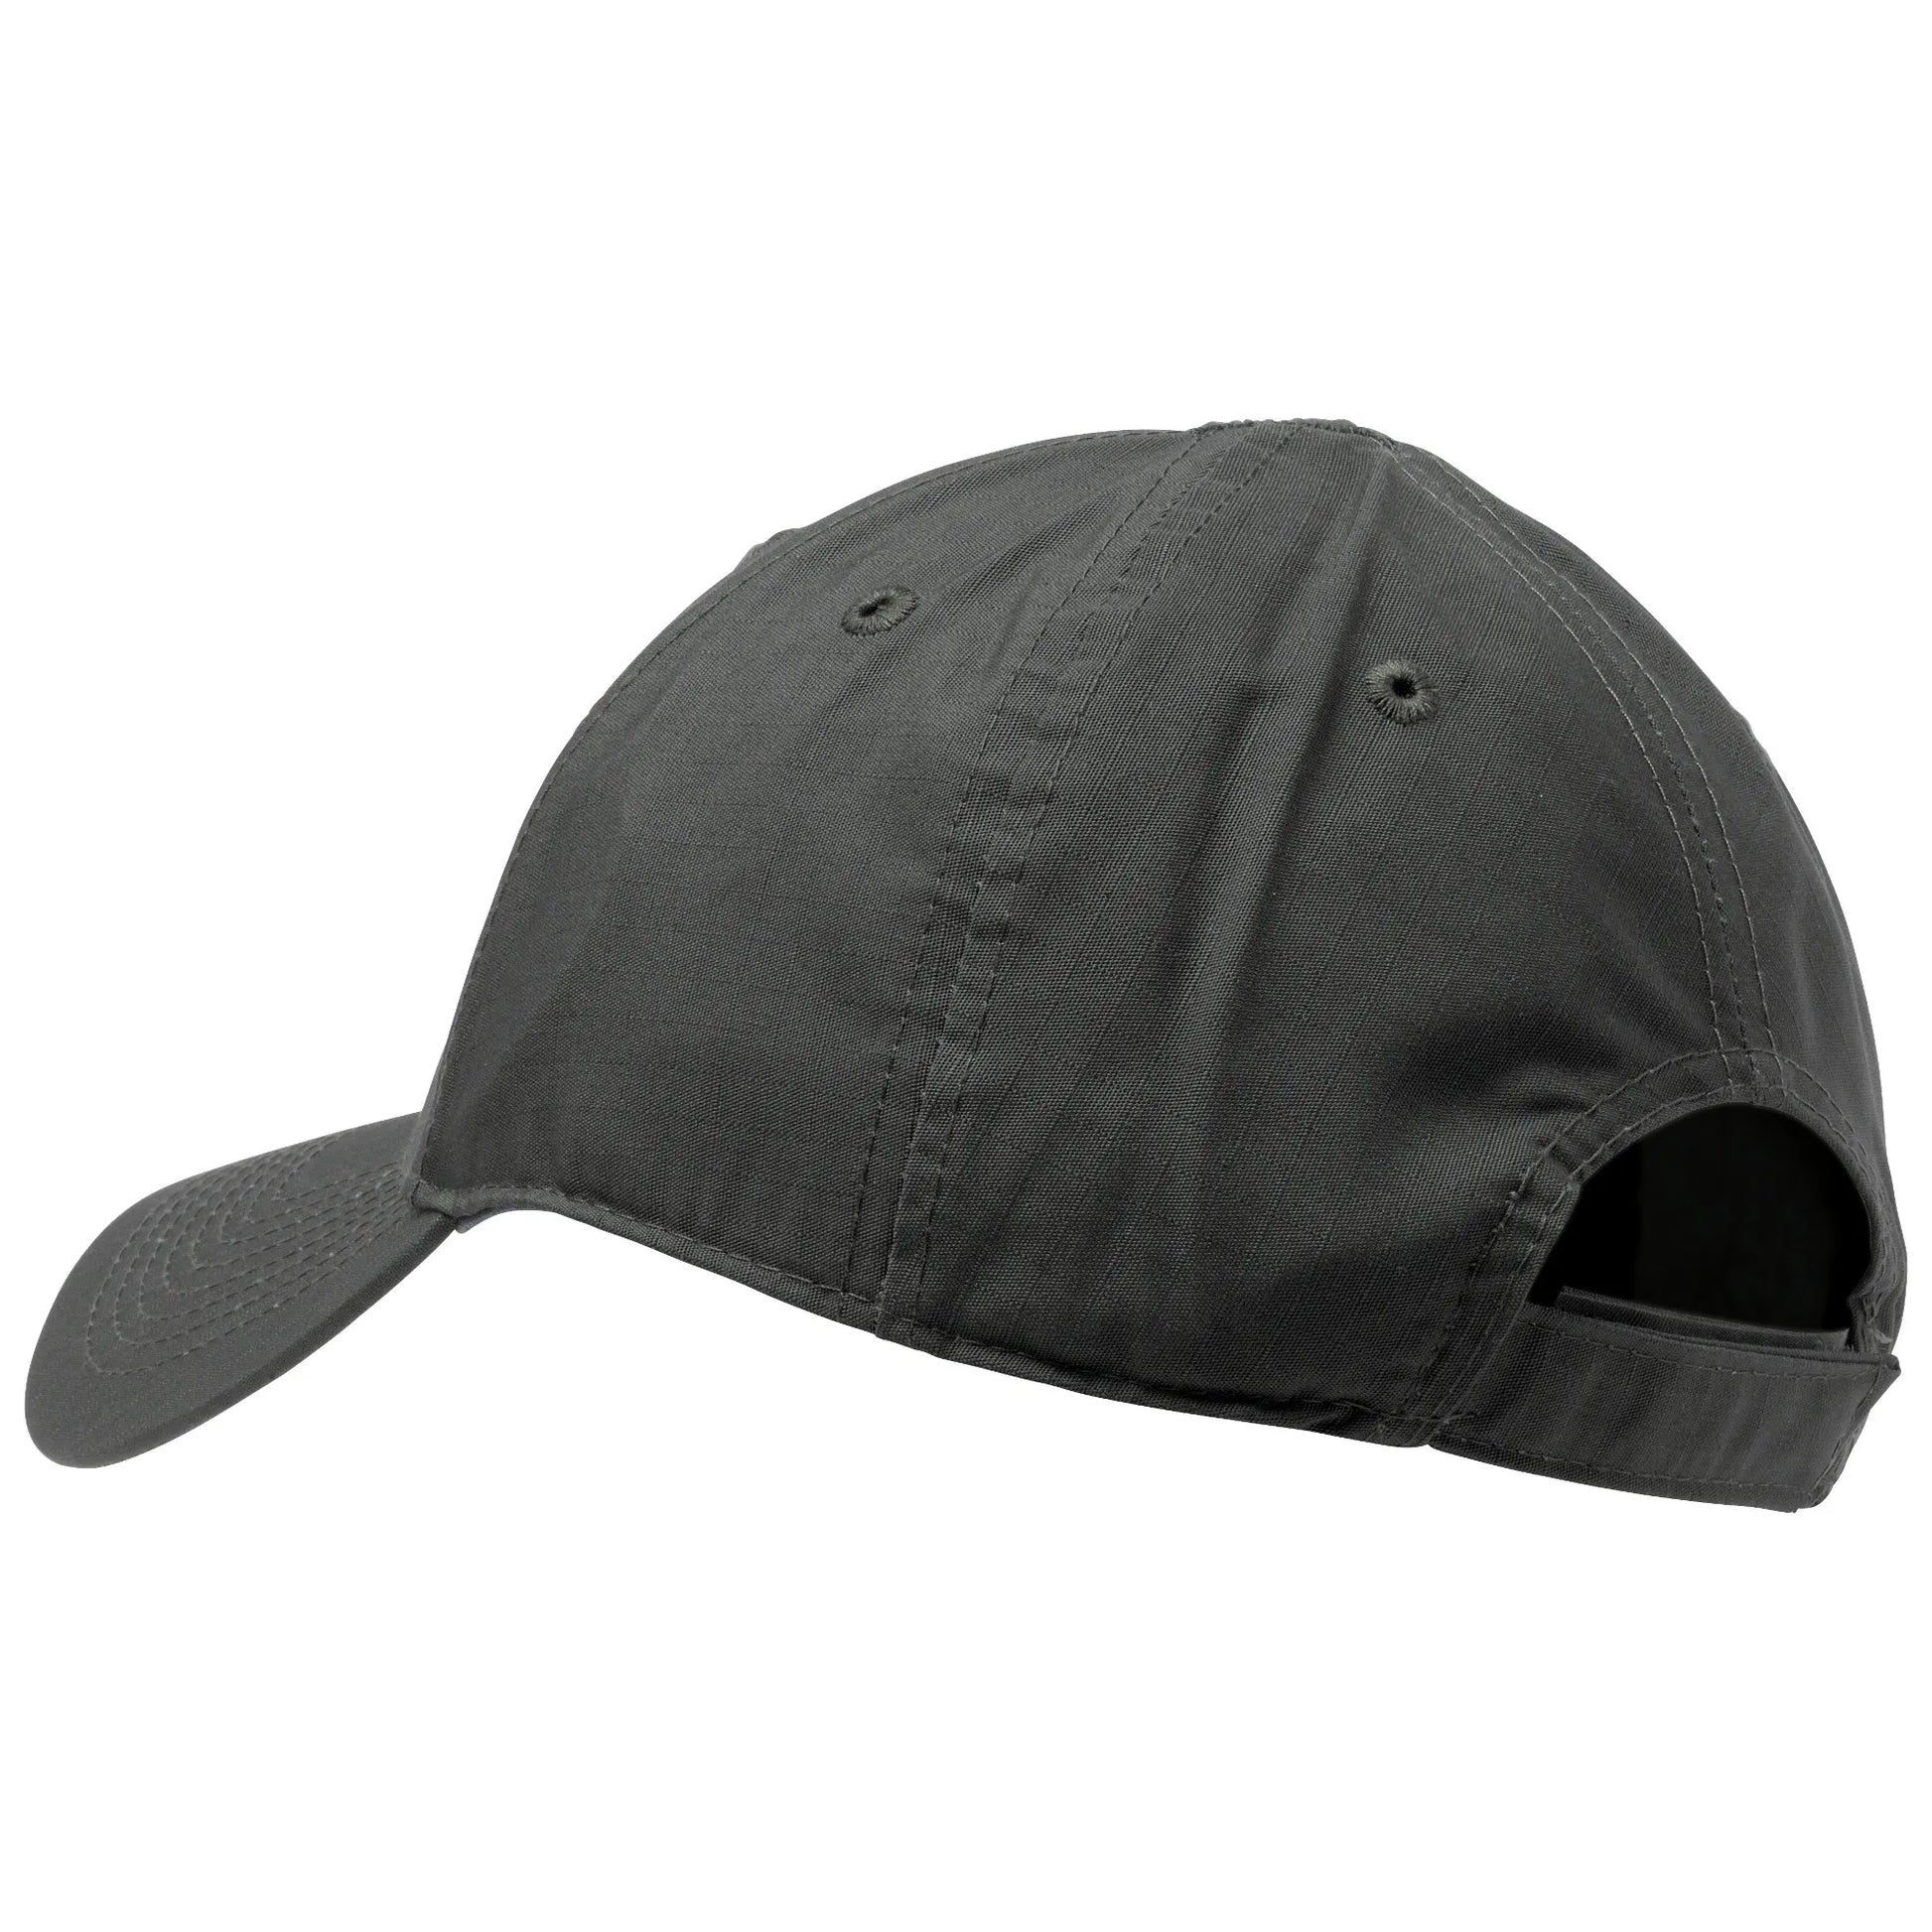 5.11 Tactical Taclite Uniform Cap-Tac Essentials